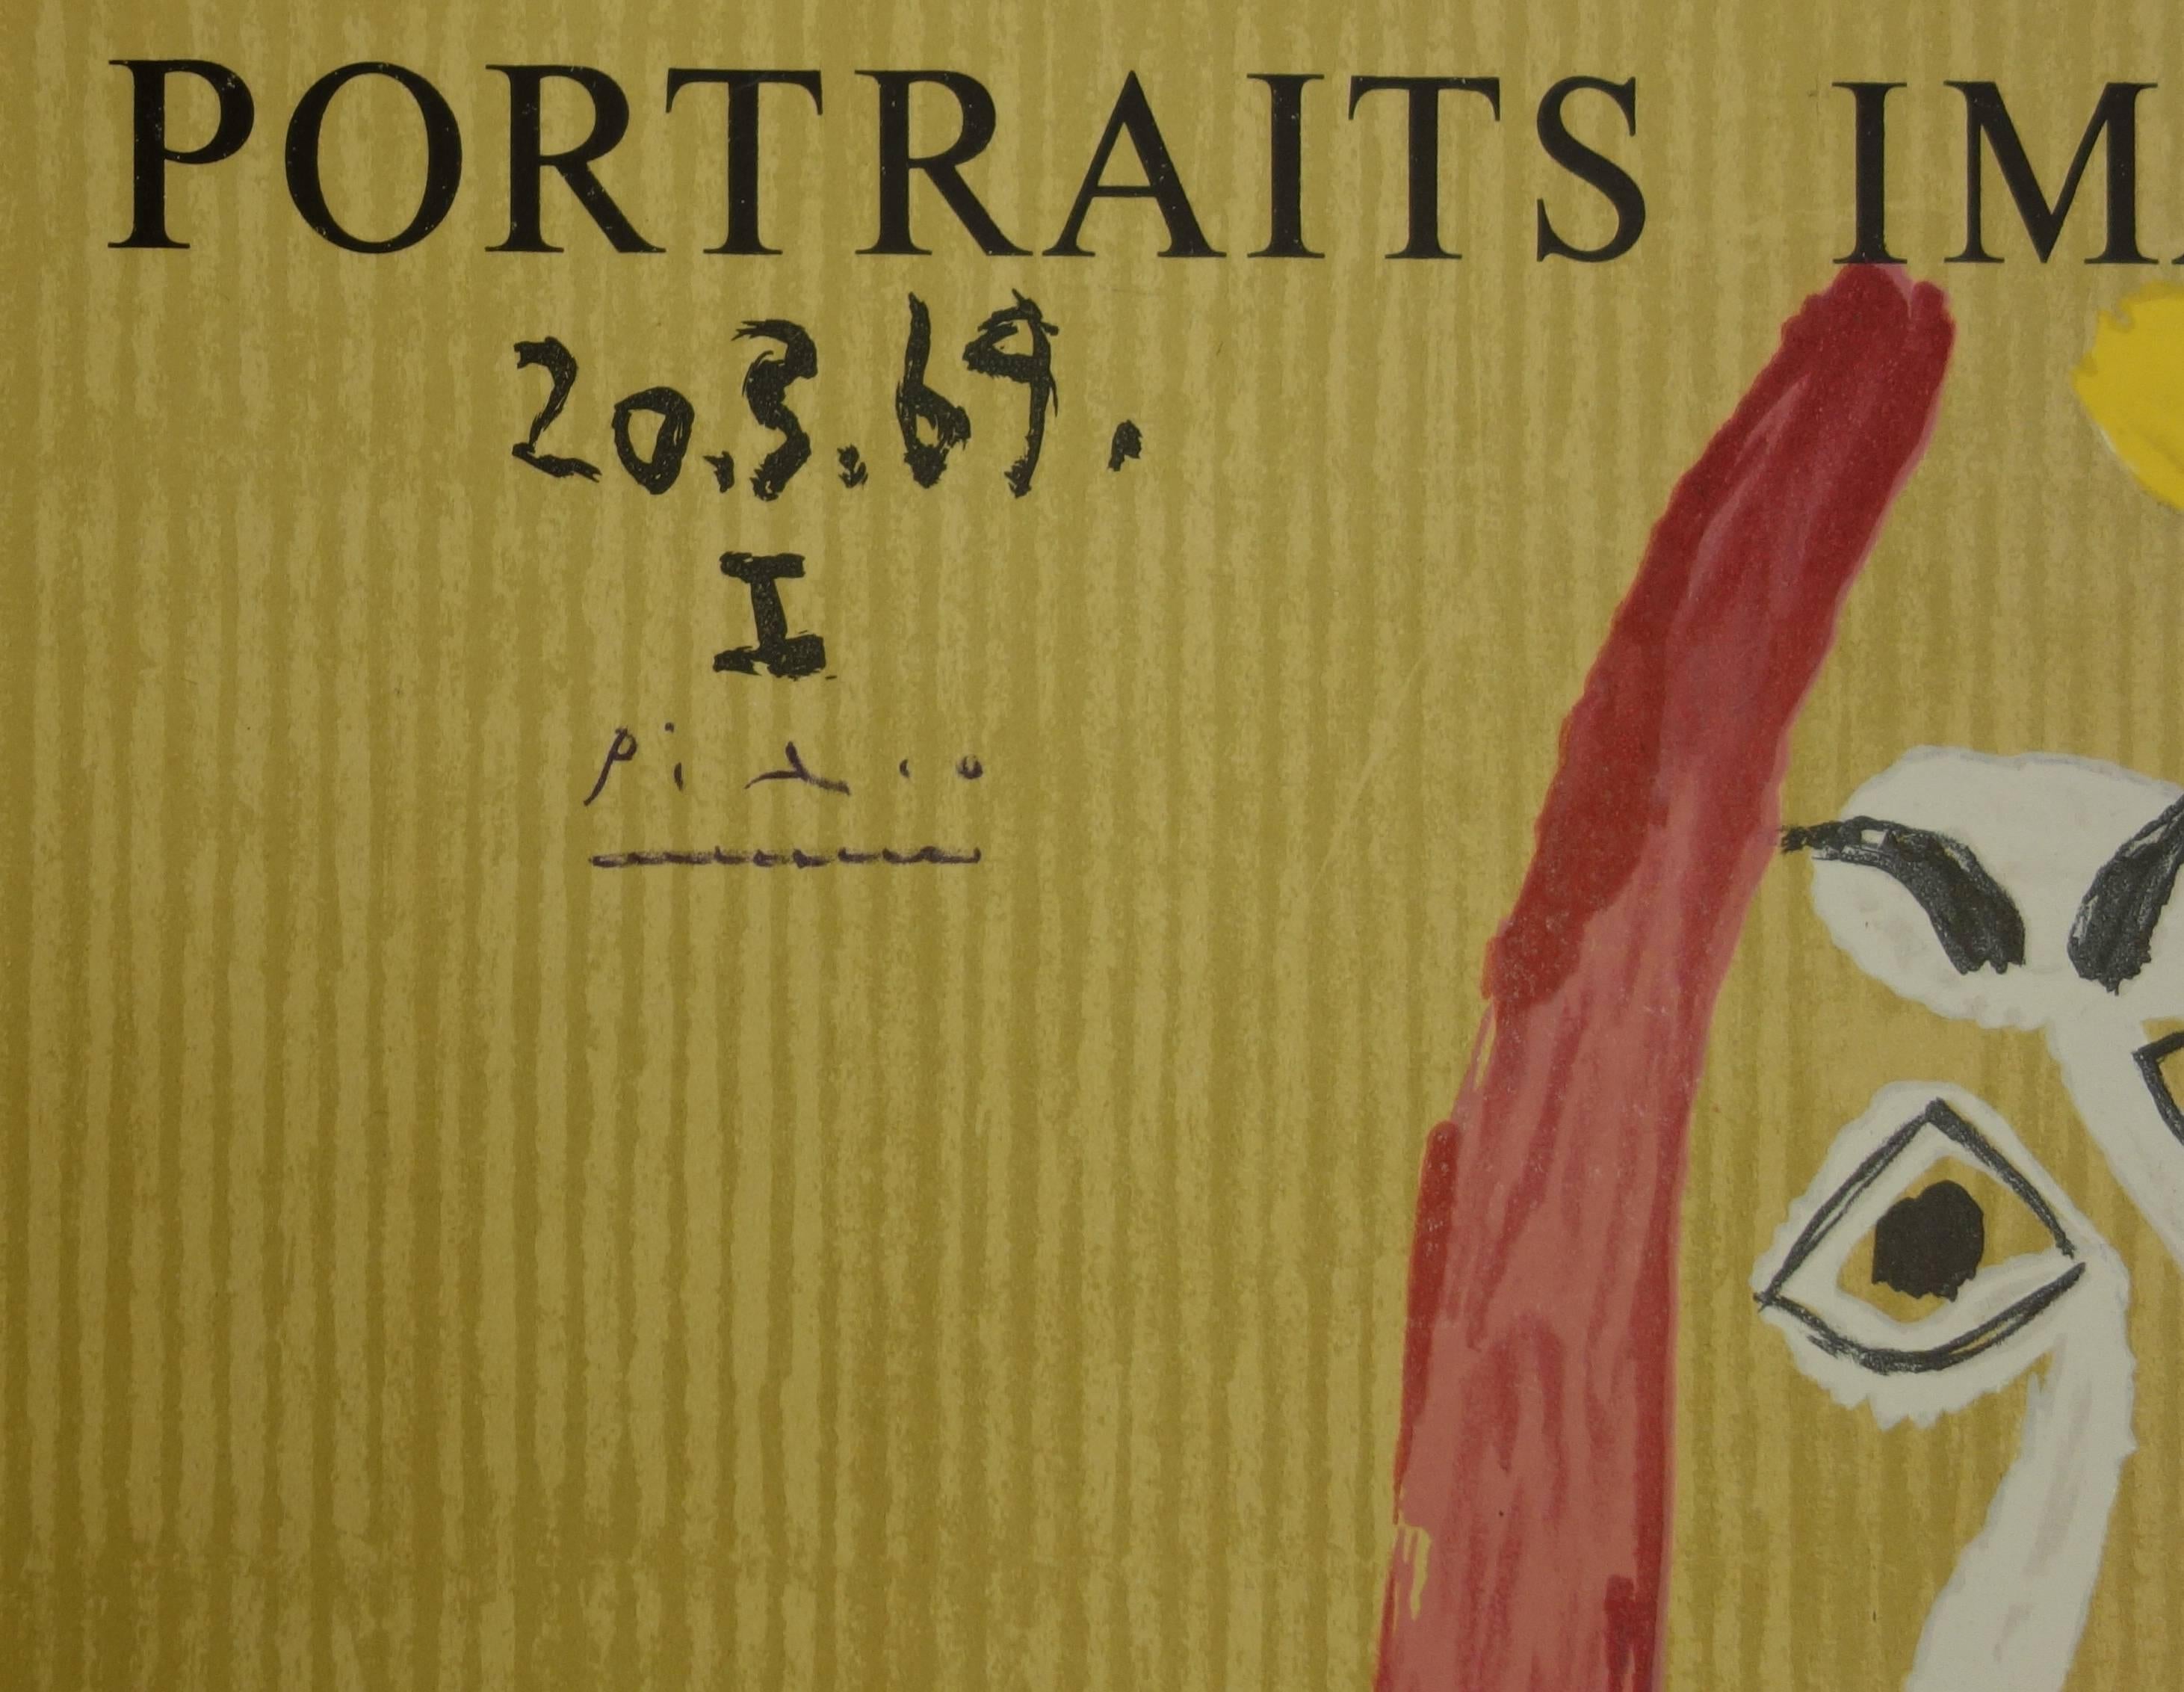 Portraits imaginaires : Homme avec une écharpe bleue - Lithographie - 1971 - Print de (after) Pablo Picasso